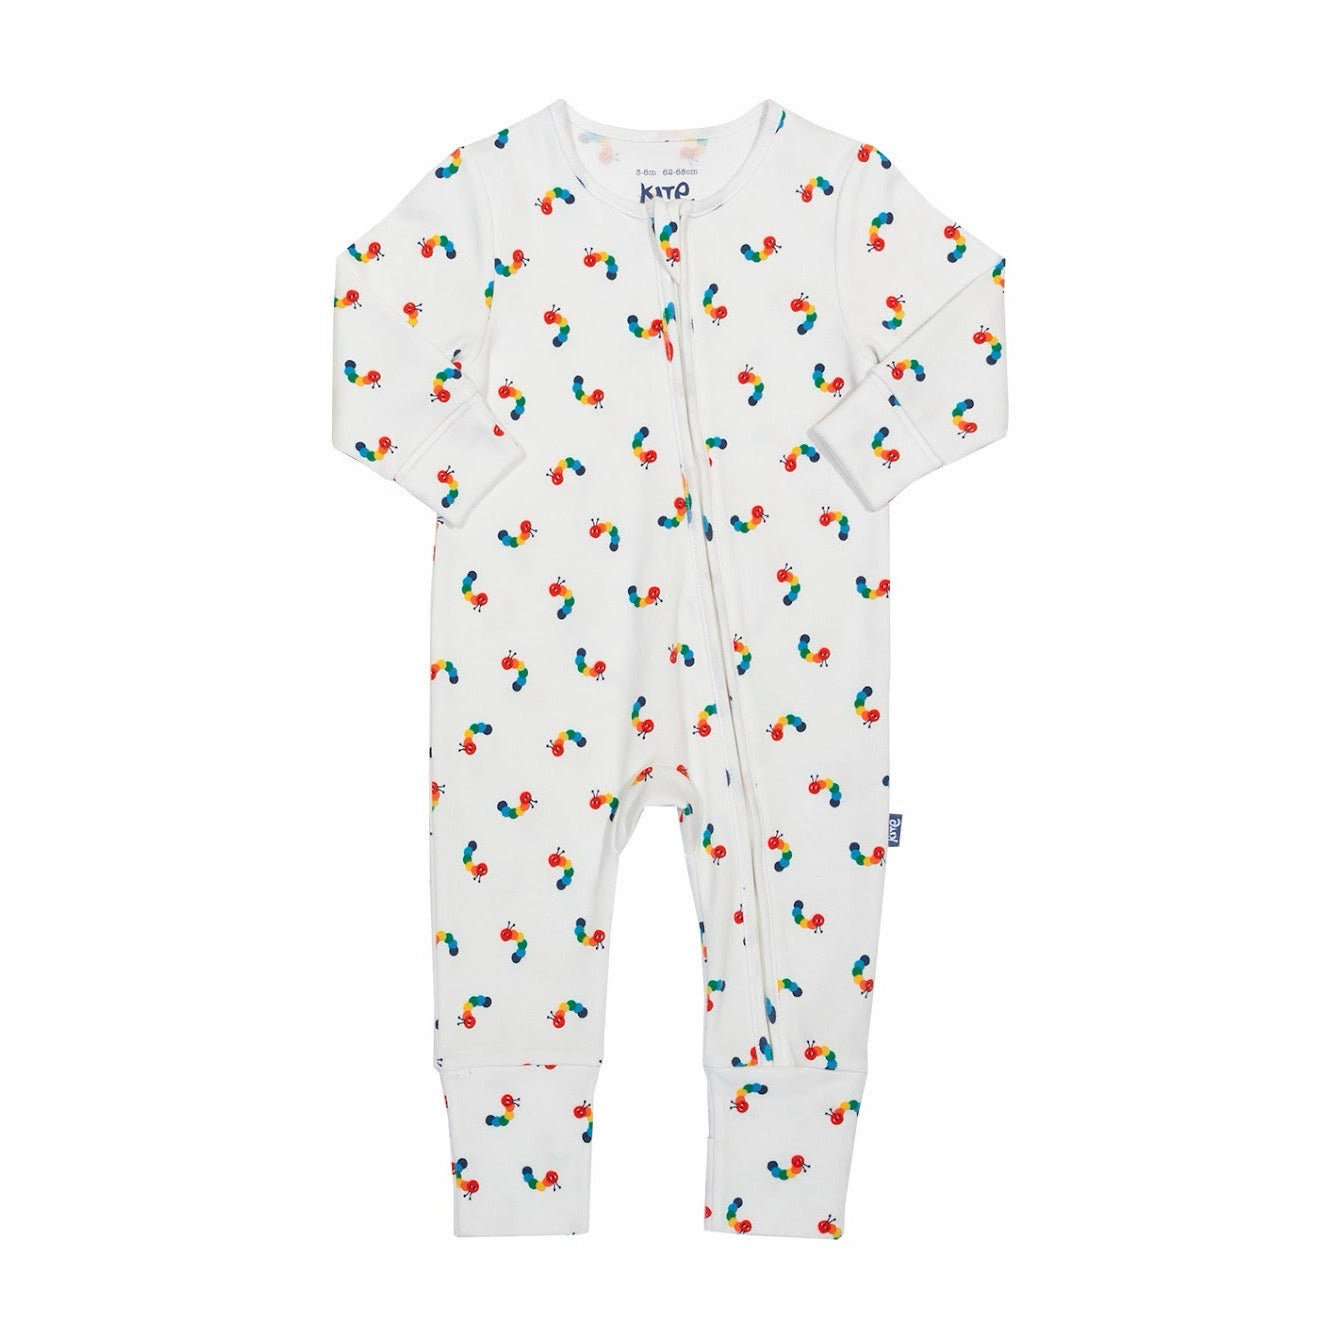 Kite Rainbow Caterpillar Baby Sleepsuit 41-8895 Clothing NEWBORN / White,0-1M / White,0-3M / White,3-6M / White,6-9M / White